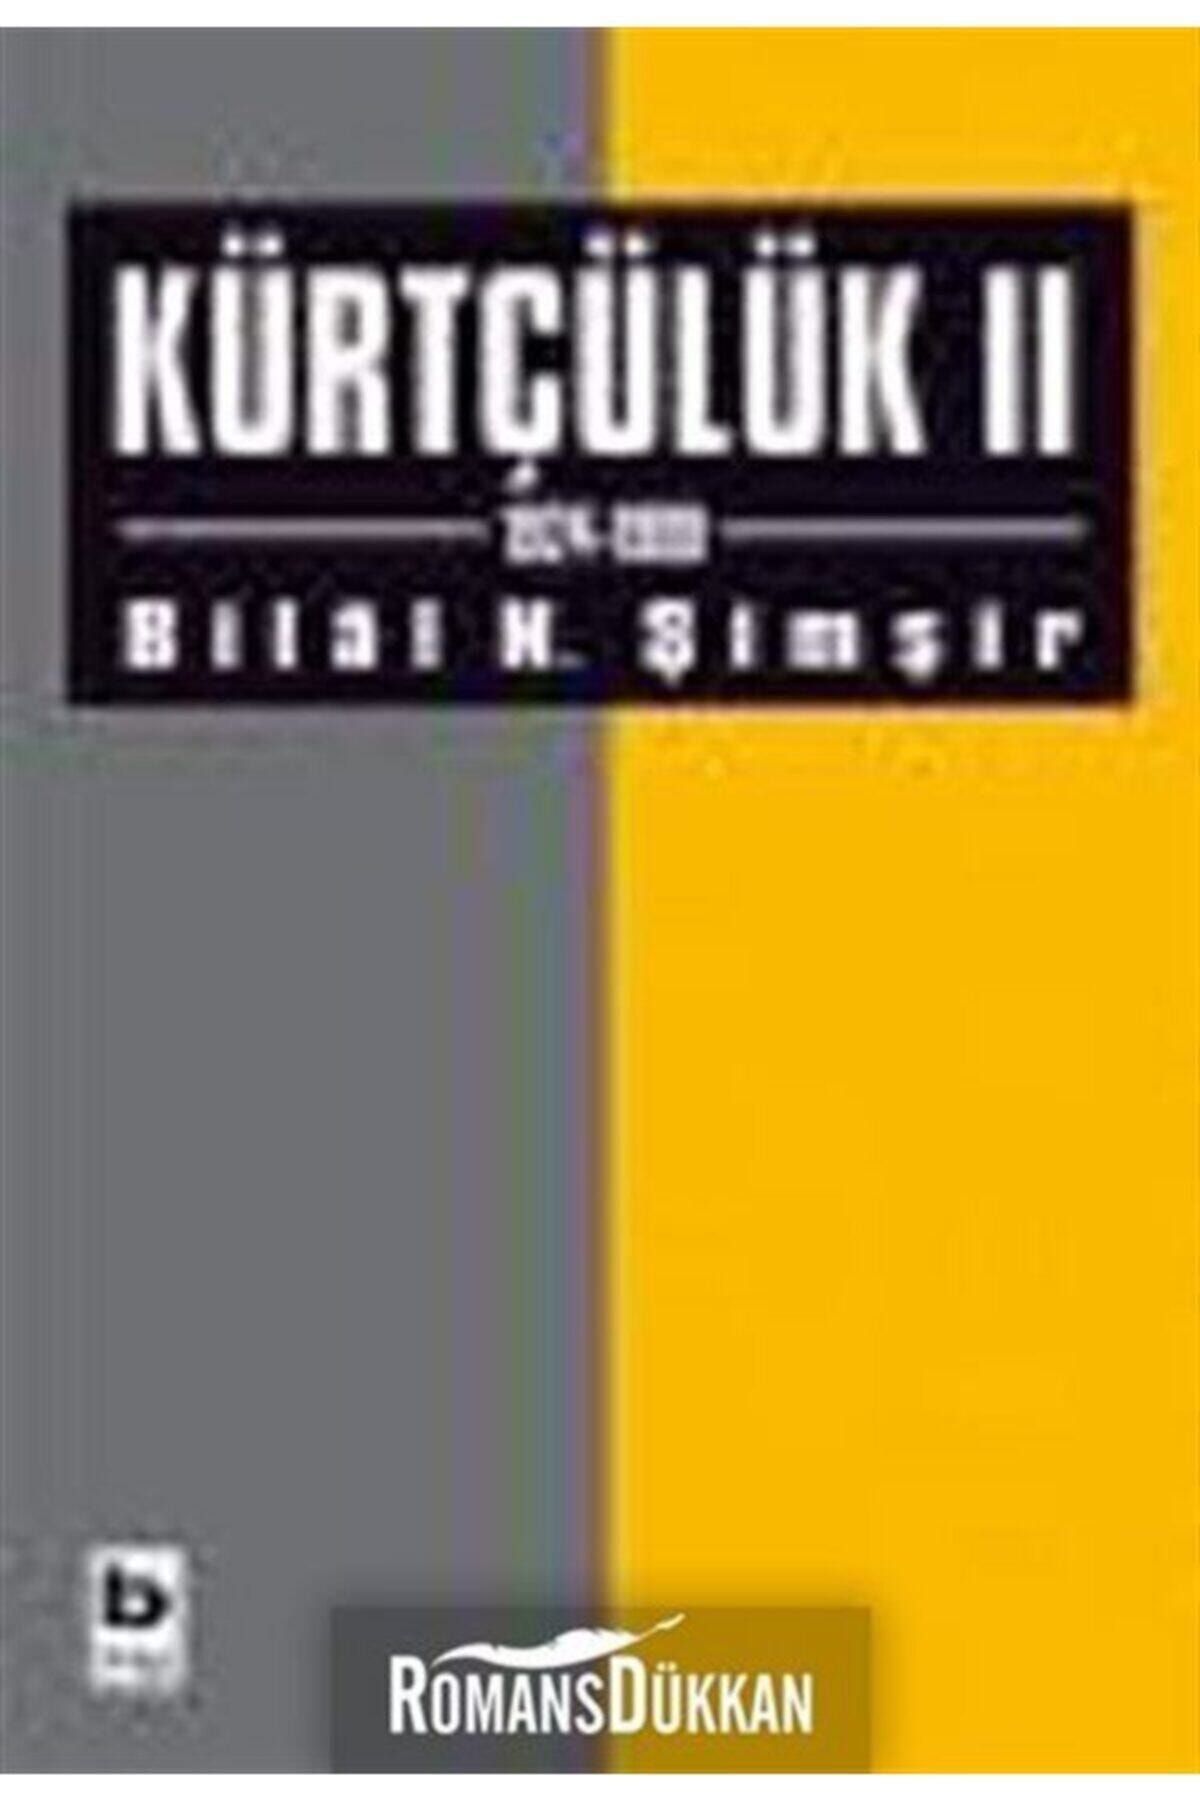 Bilgi Yayınları Kürtçülük 2 1924-1999